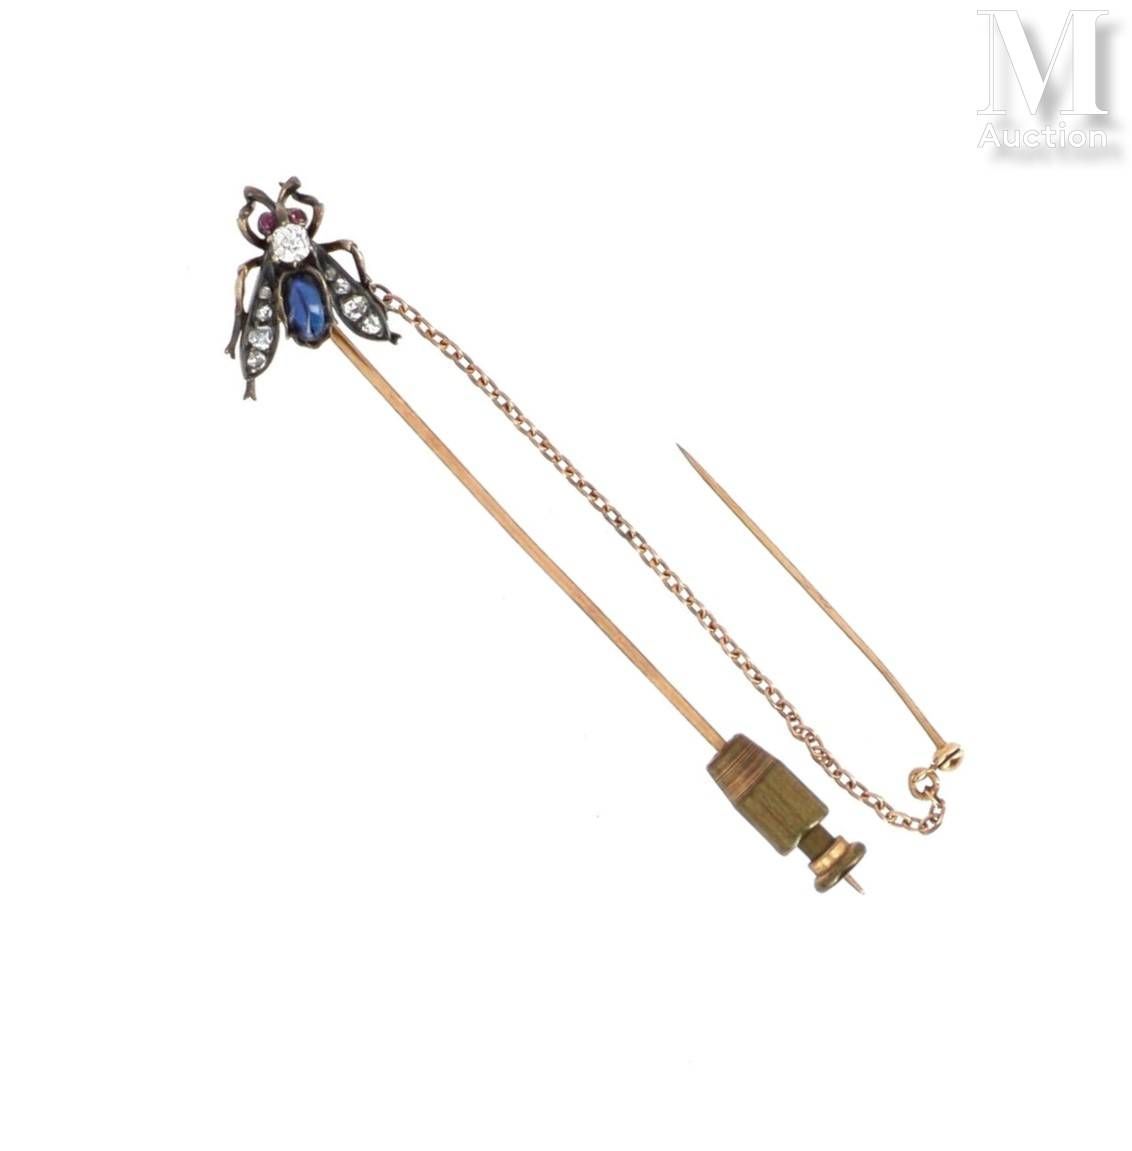 Epingle mouche 18K黄金（750°/°）领带针，镶嵌银质苍蝇（800°/°），主体镶嵌老式切割钻石和凸圆形蓝宝石，翅膀上有钻石玫瑰装饰；配有链条&hellip;